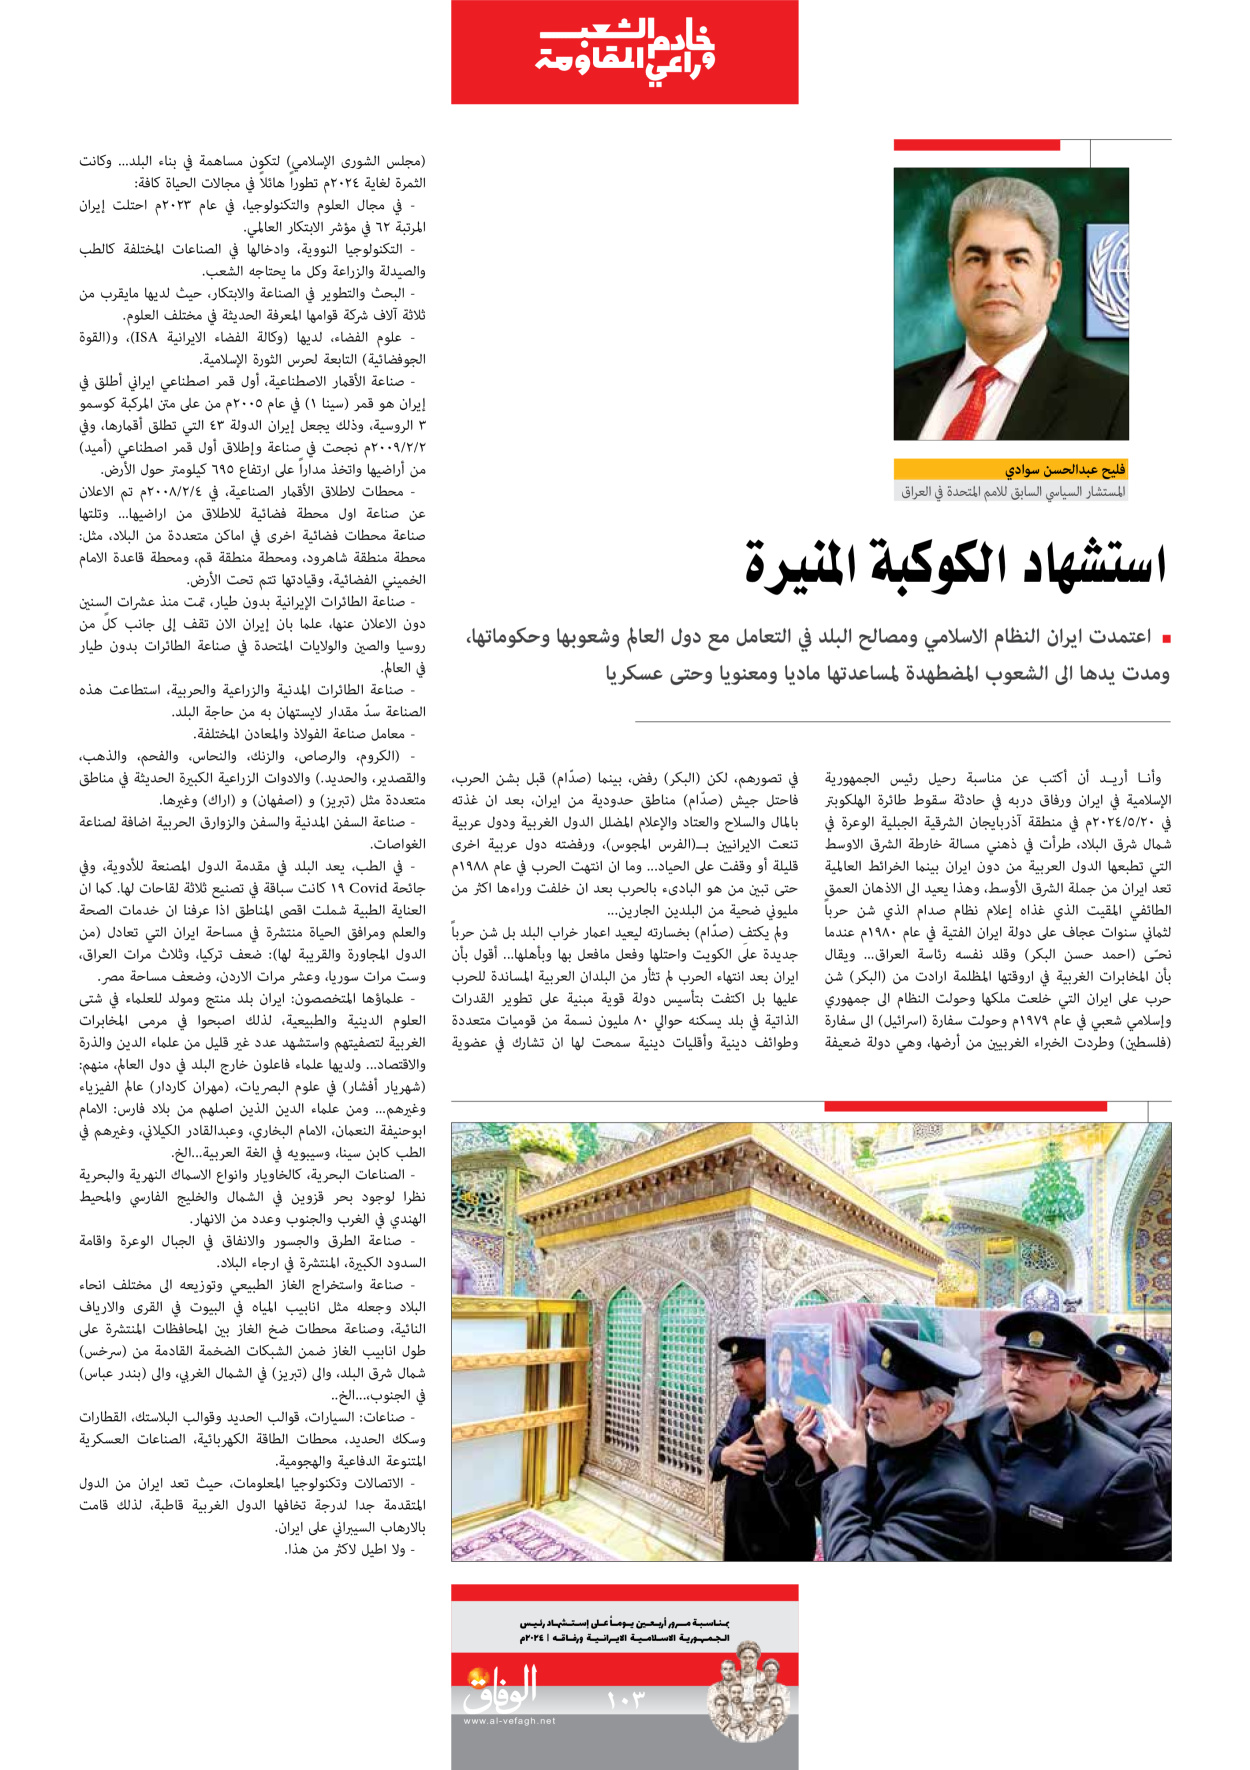 صحیفة ایران الدولیة الوفاق - ملحق ویژه نامه چهلم شهید رییسی - ٢٩ يونيو ٢٠٢٤ - الصفحة ۱۰۲